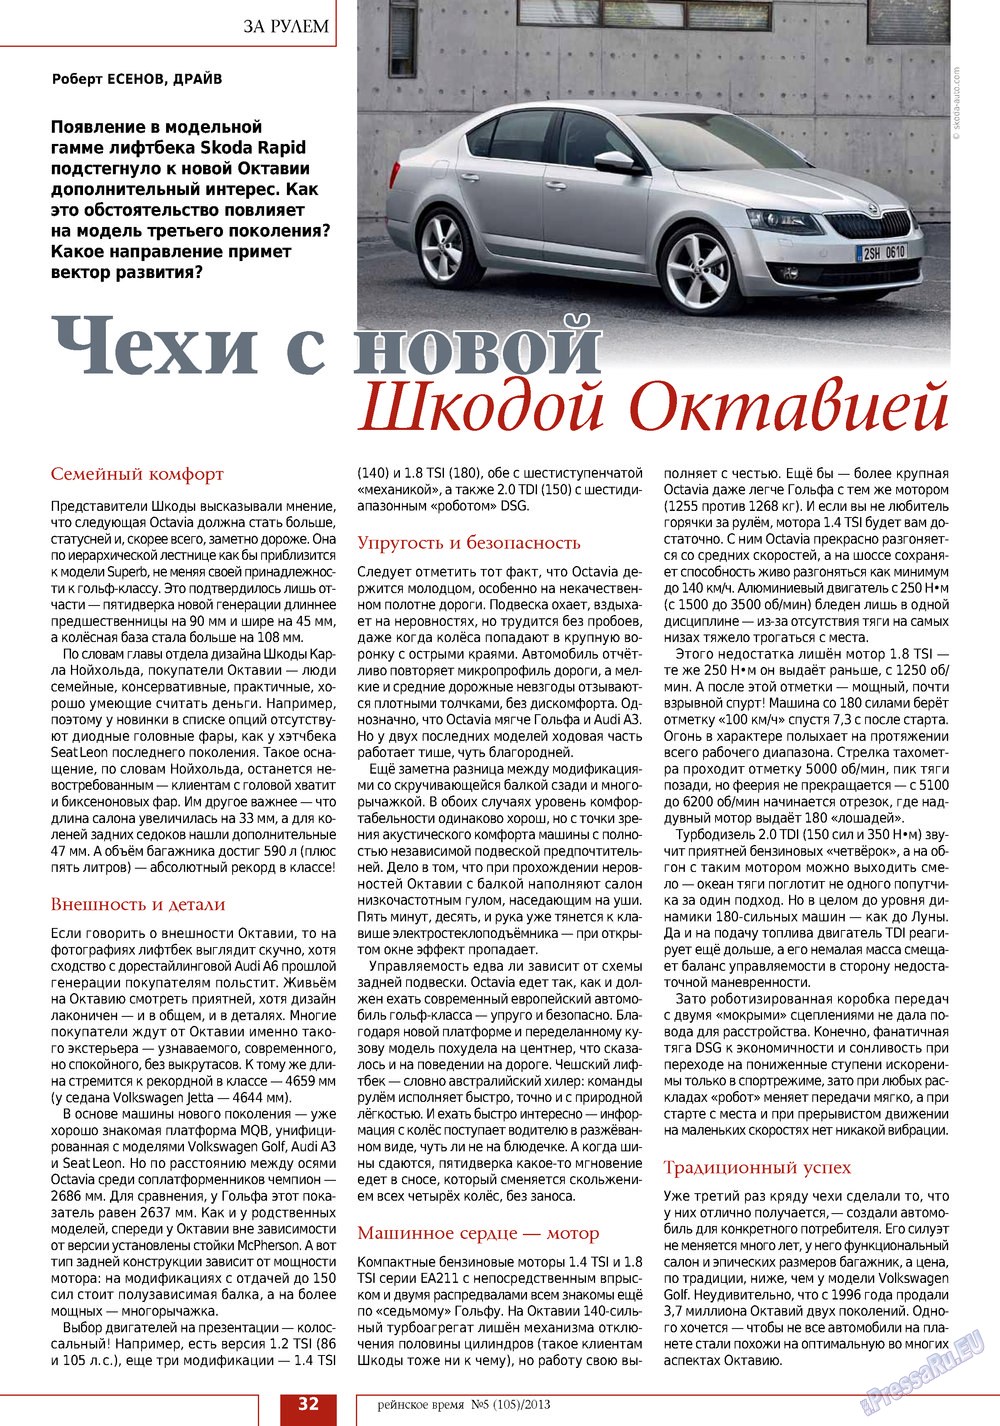 Рейнское время, журнал. 2013 №5 стр.32